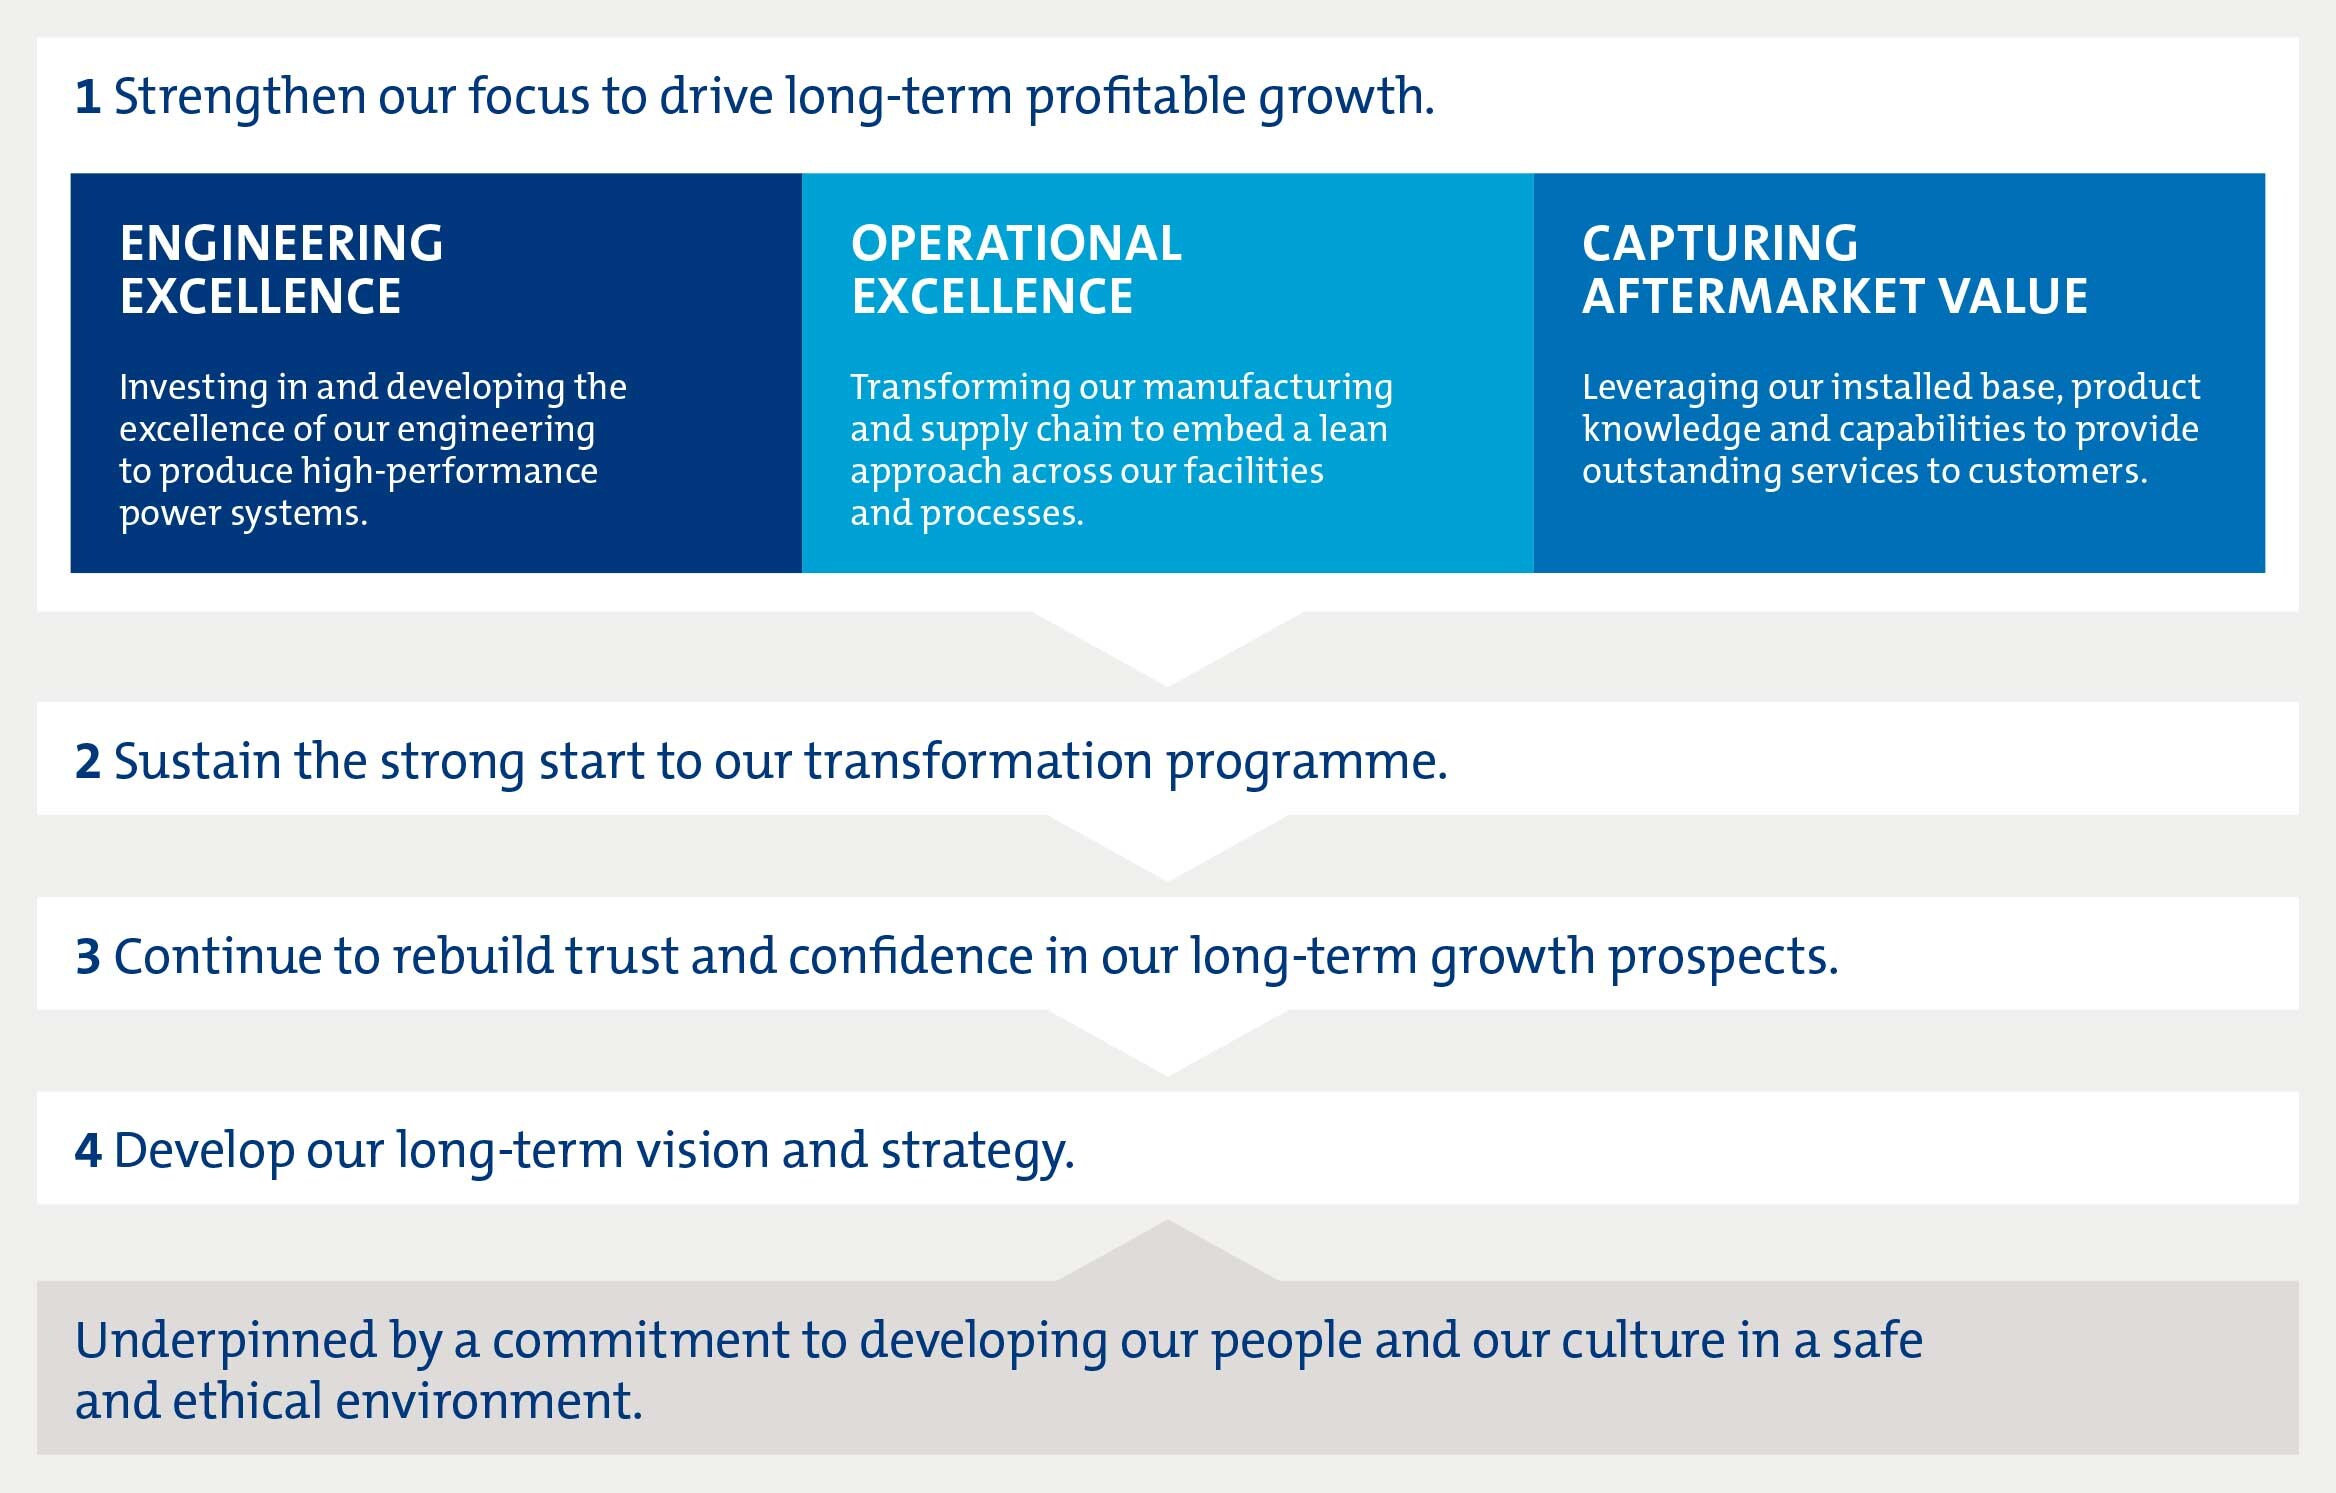 1 -加强我们专注开车长期盈利增长(工程卓越,卓越运营和捕获售后市场价值),2 -维持强劲的开始变换方案,3 -继续重建信任和信心在我们的长期增长前景,4 -发展我们的长期愿景和策略。以承诺在安全和道德的环境中发展我们的人民和文化为基础。